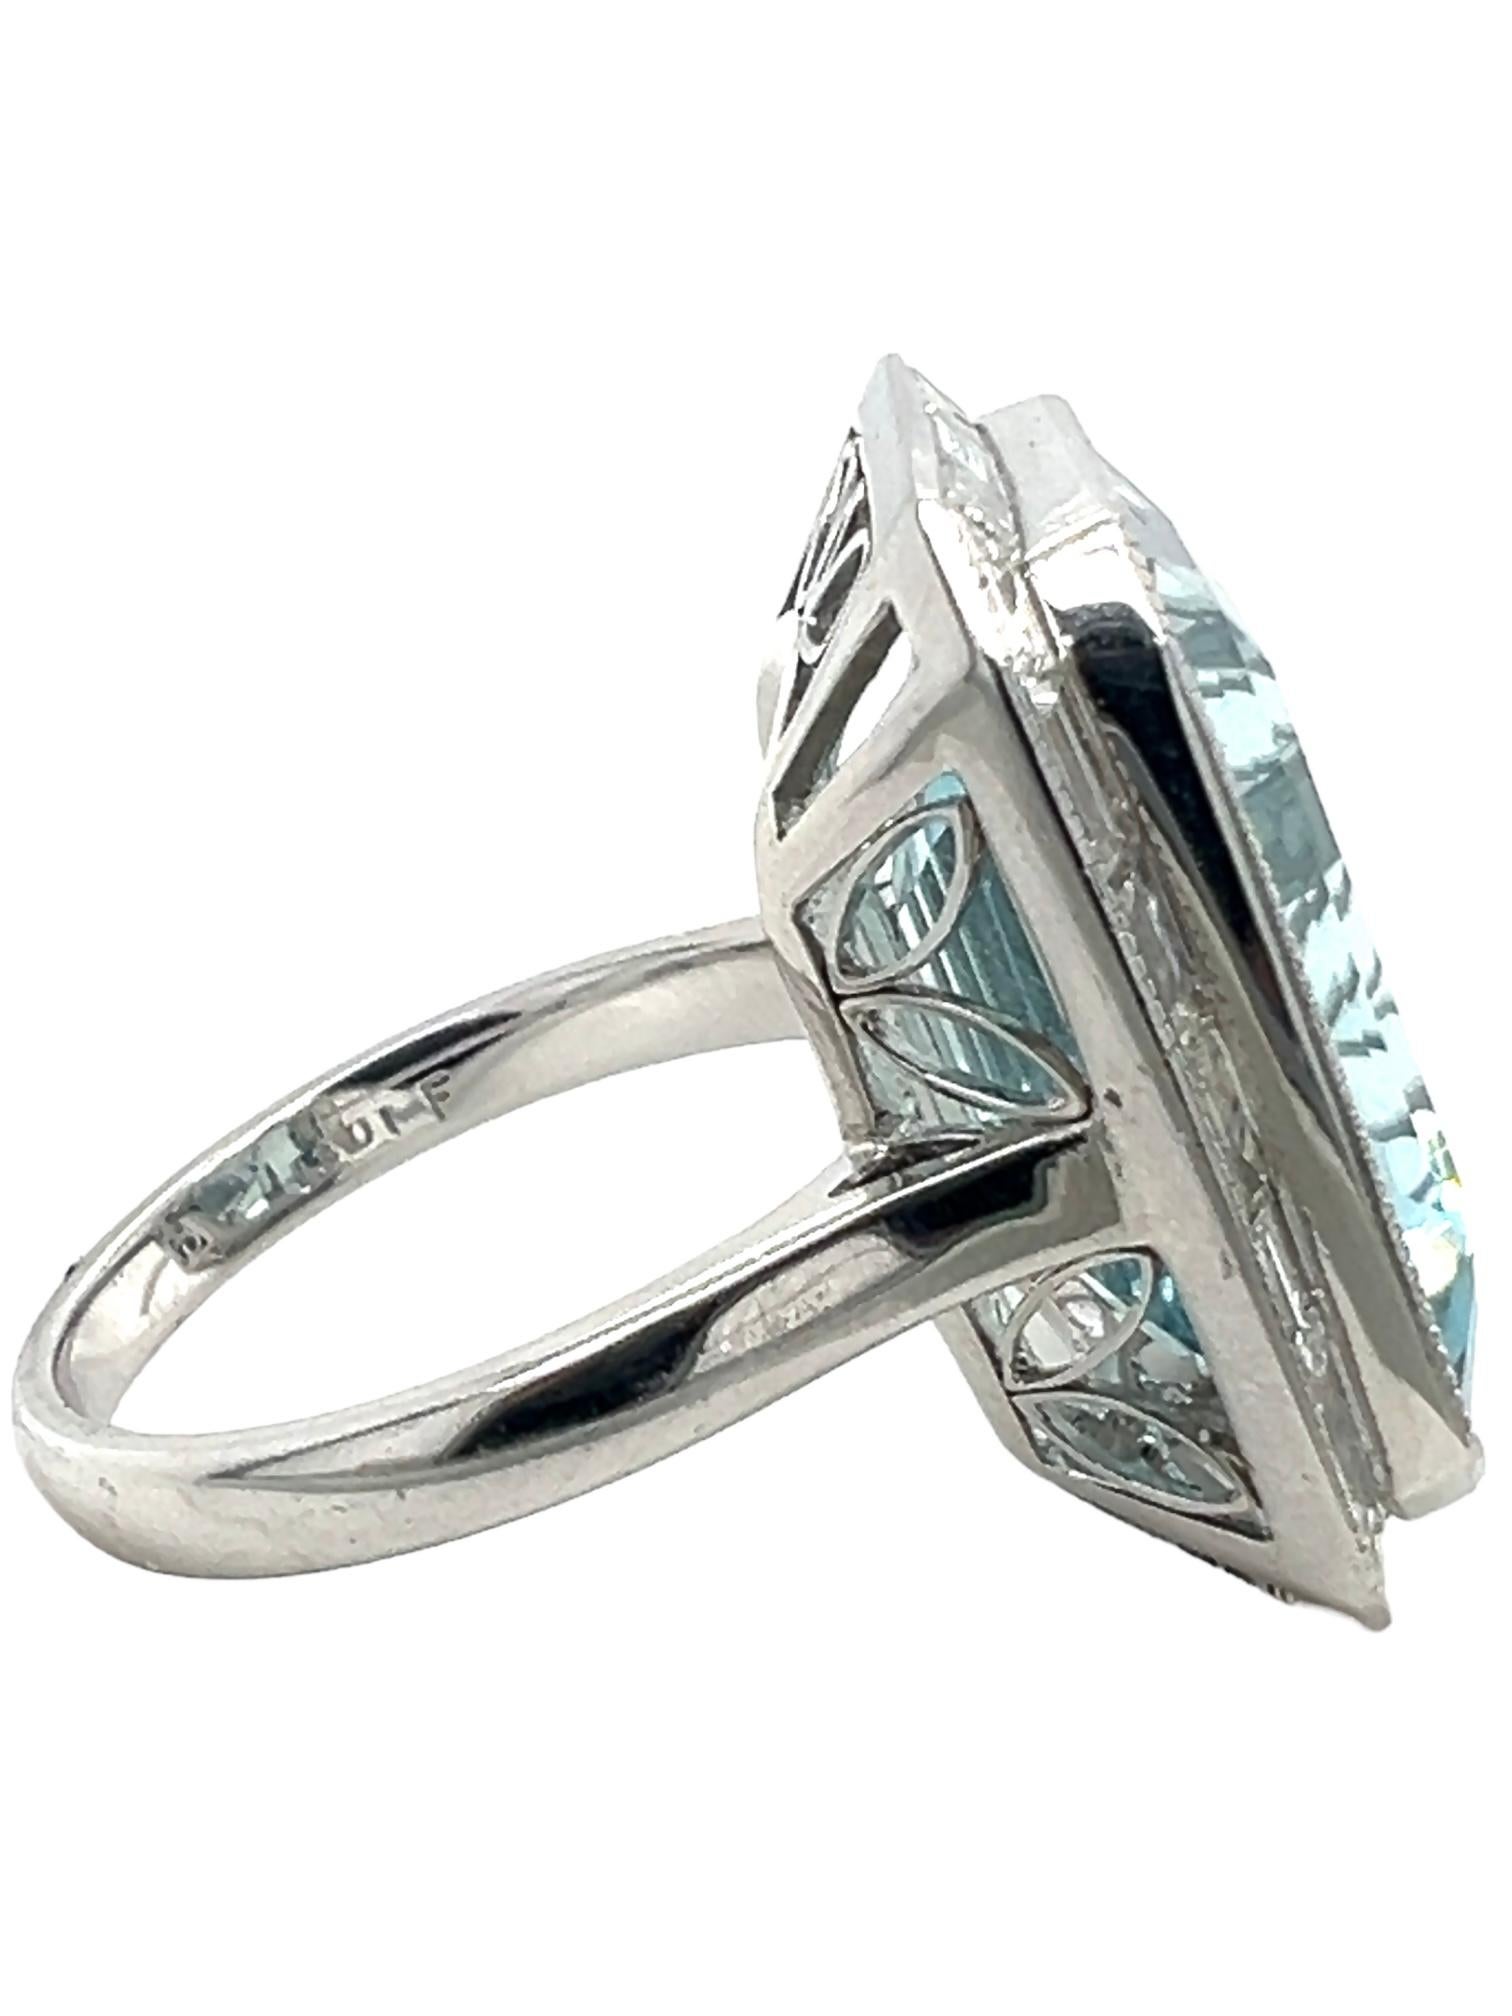 Emerald Cut Sophia D. 14.14 Carat Aquamarine Ring For Sale